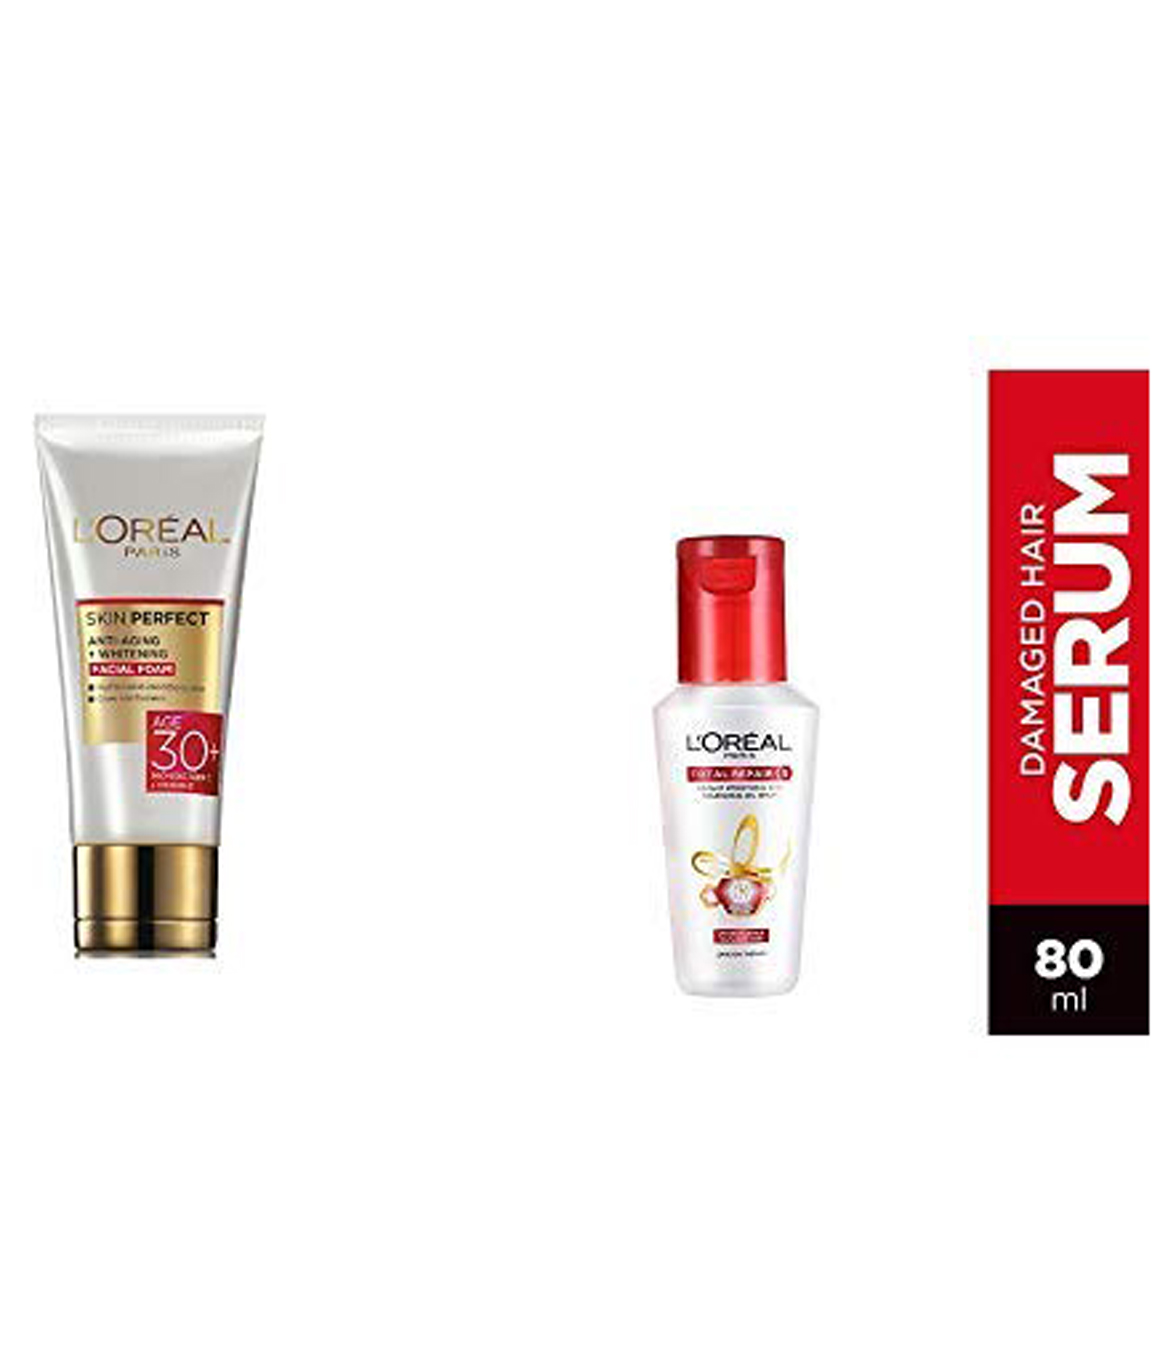 L`Oreal Paris Skin Perfect 30+ Facial Foam, 50g and L`Oreal Paris Total Repair 5 Serum, 80ml